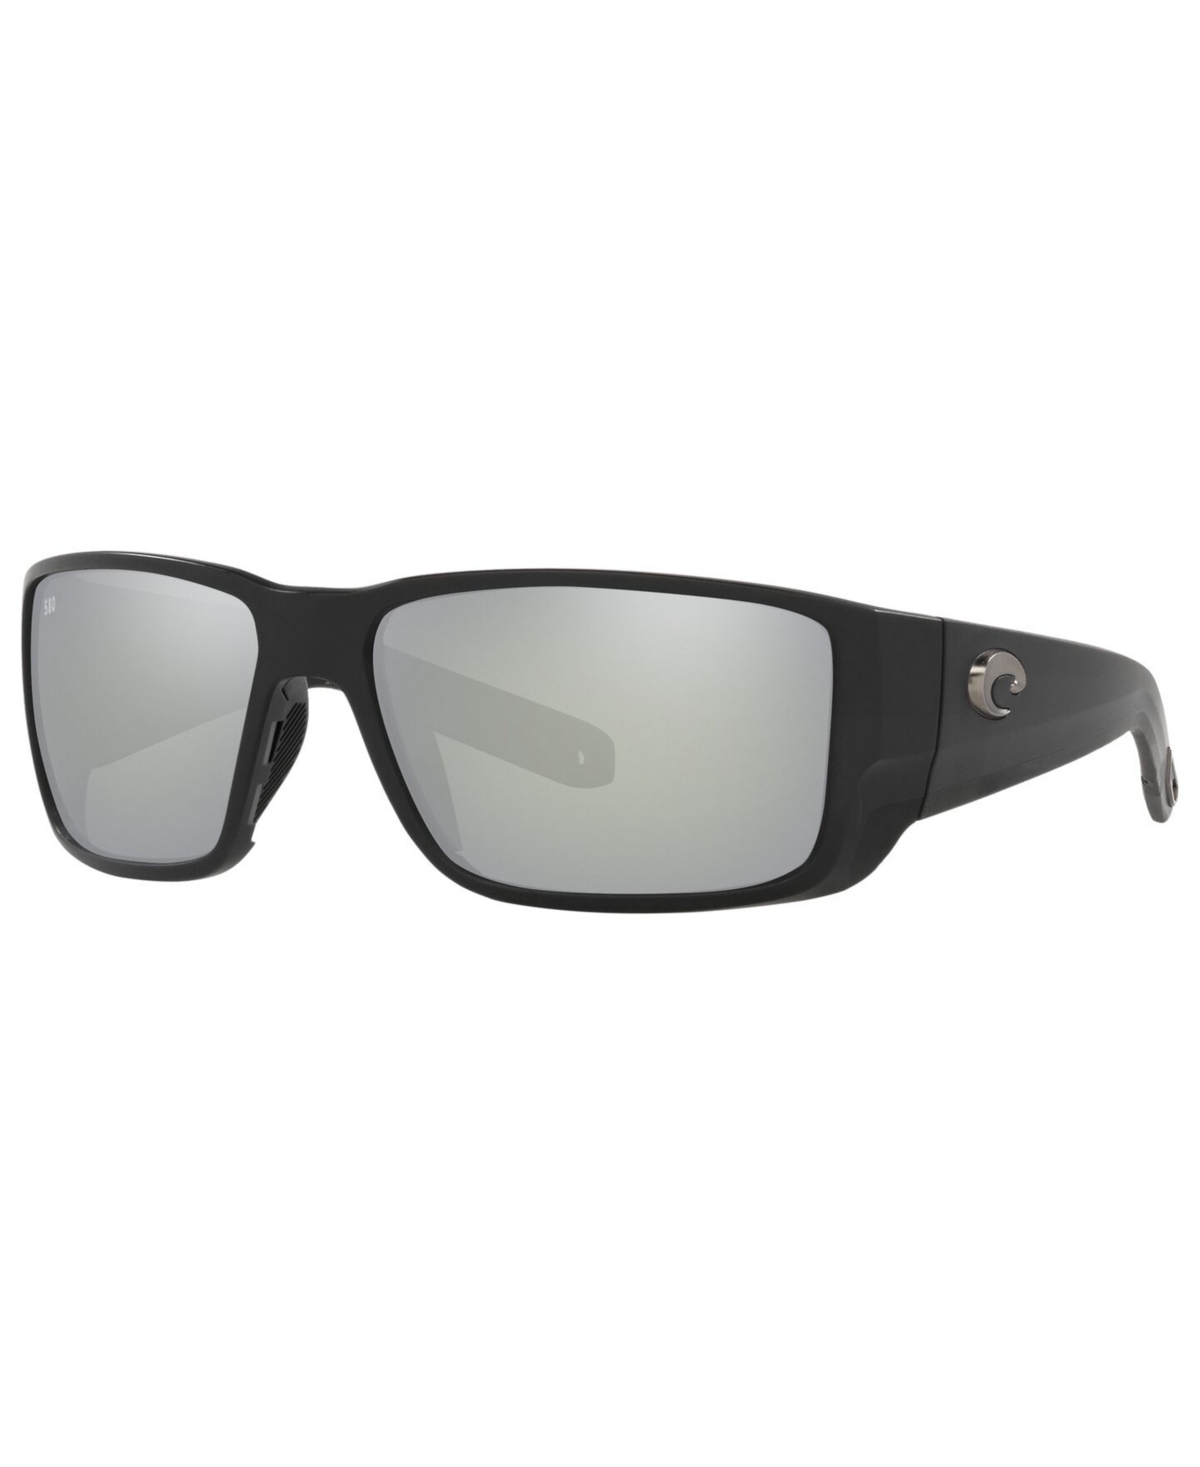 Costa Del Mar Polarized Blackfin Pro Sunglasses, 6S9078 60